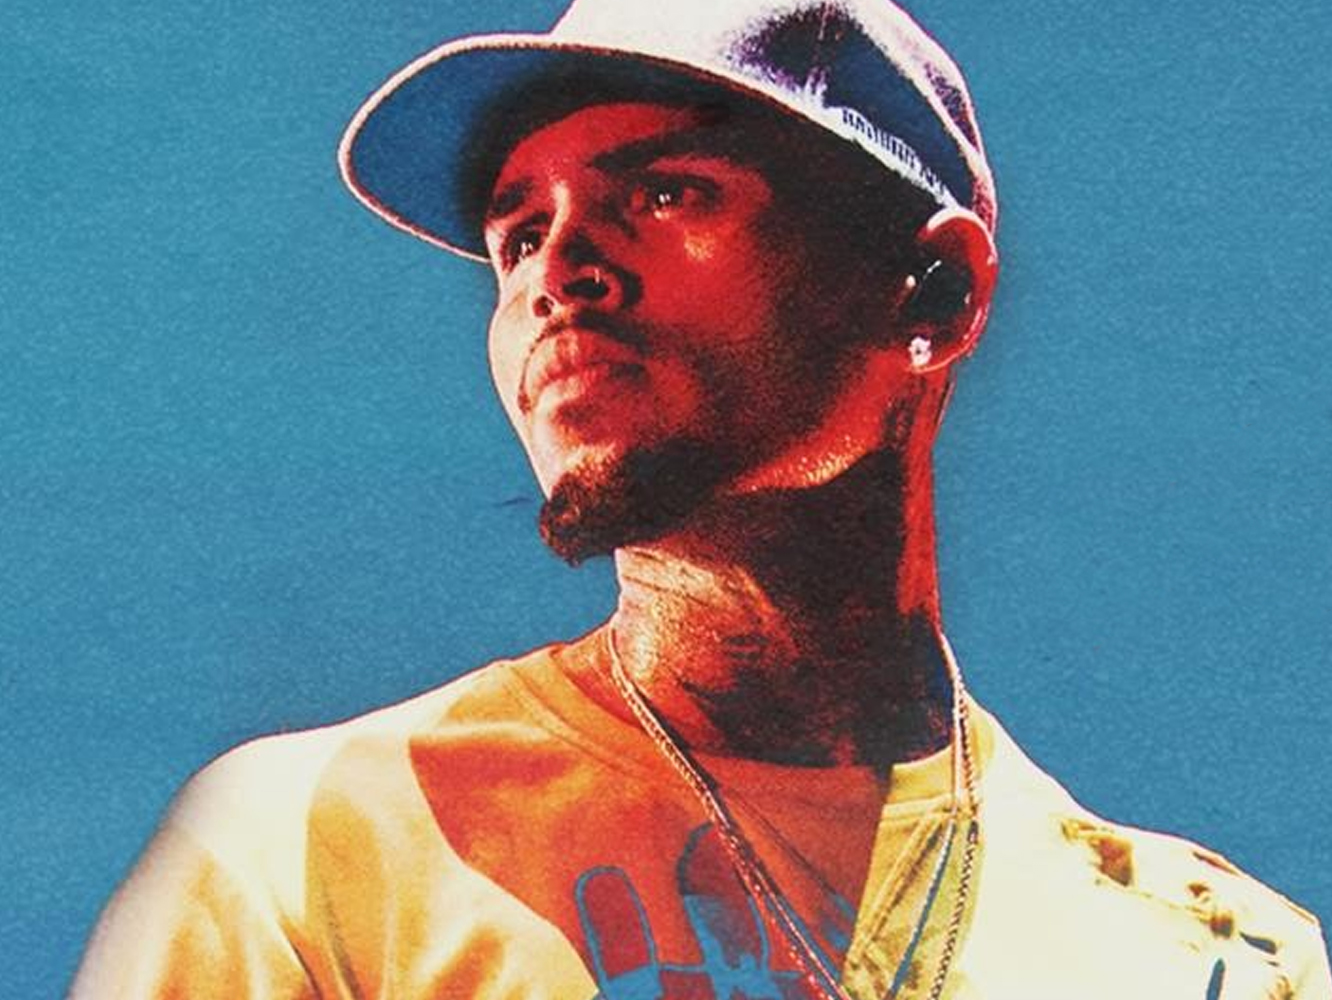 Chris Brown vuelve -tragic-, pero además lo hace sampleando otra tragedia